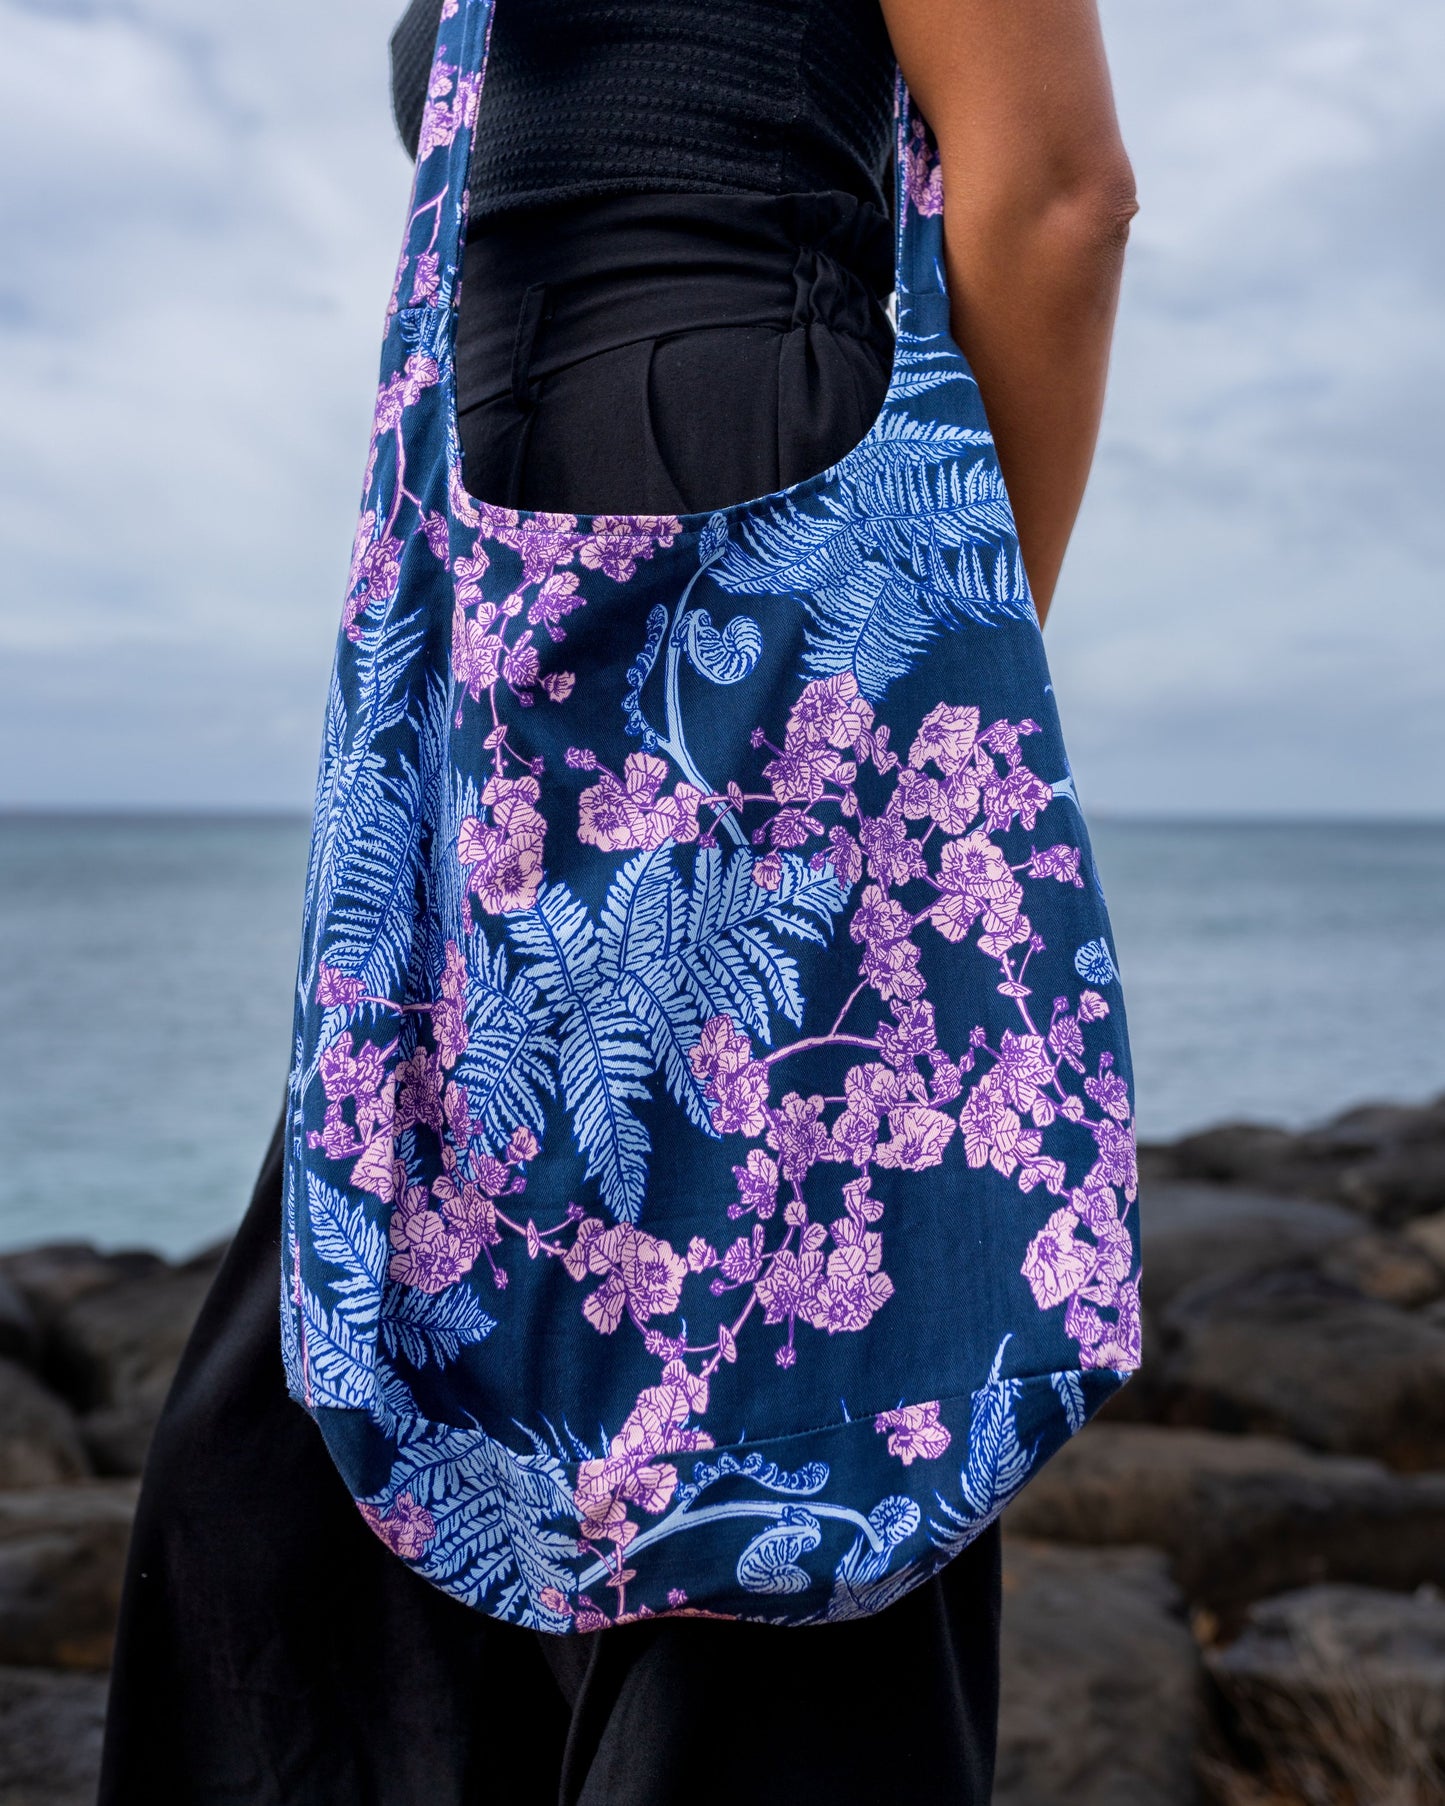 HĀPUʻU 'ILIMA MAUKA TO MAKAI Blue Tote Bag